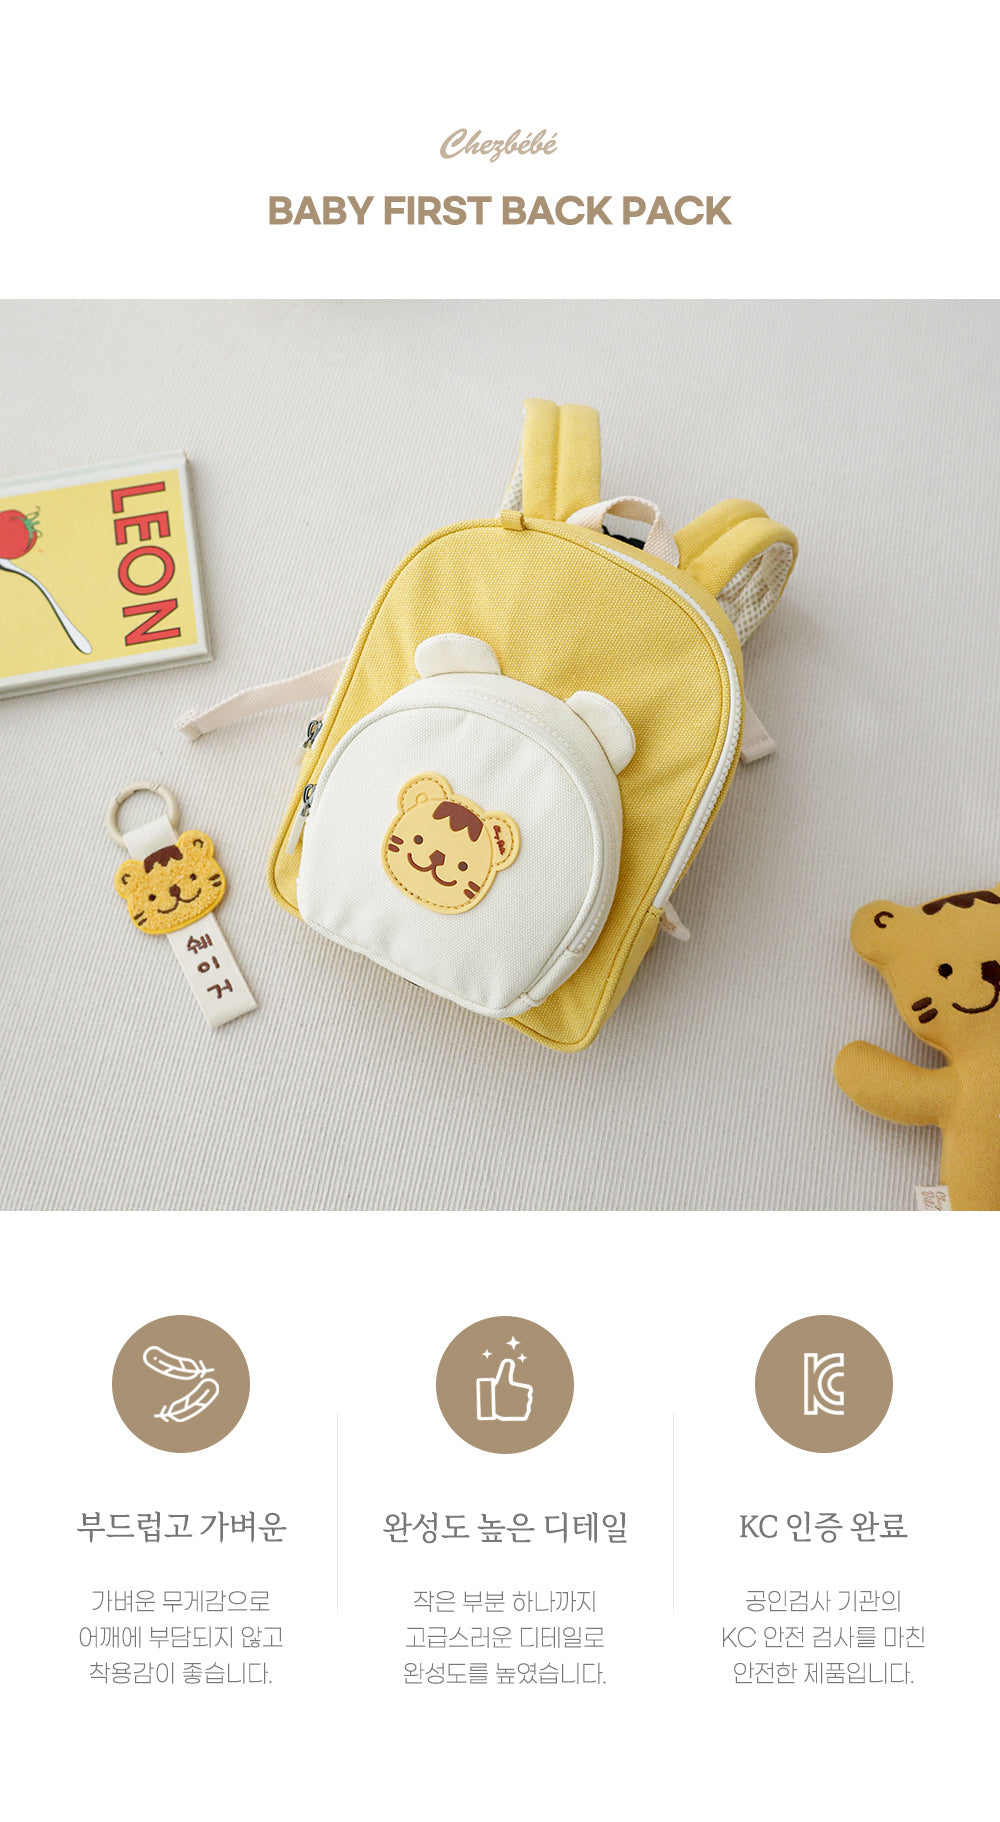 Chezbebe Animal Baby Backpack with leash